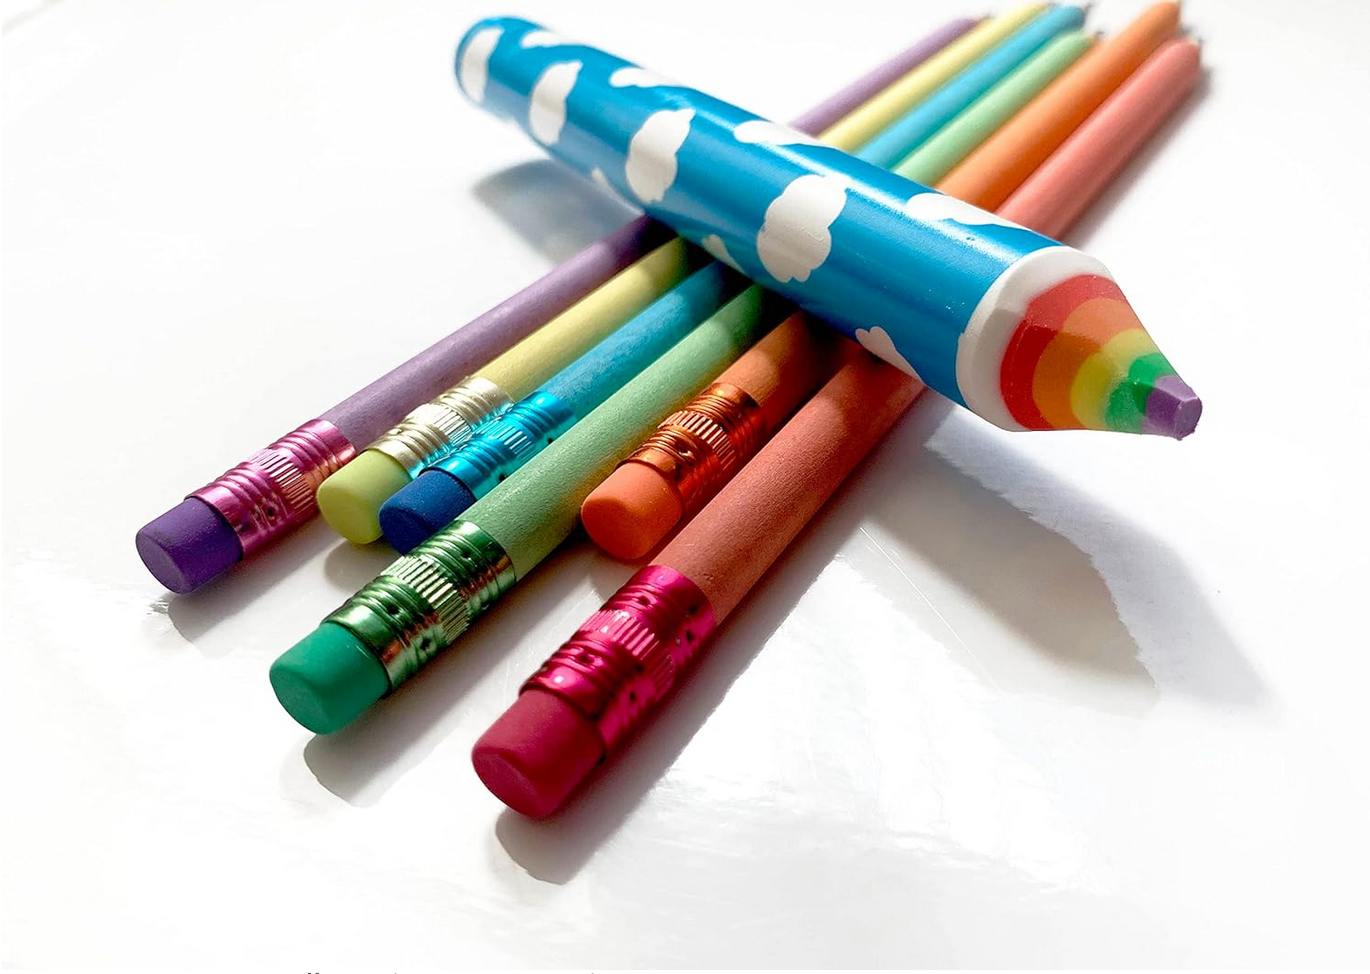 1500 Colored Pencils, 12pc Set